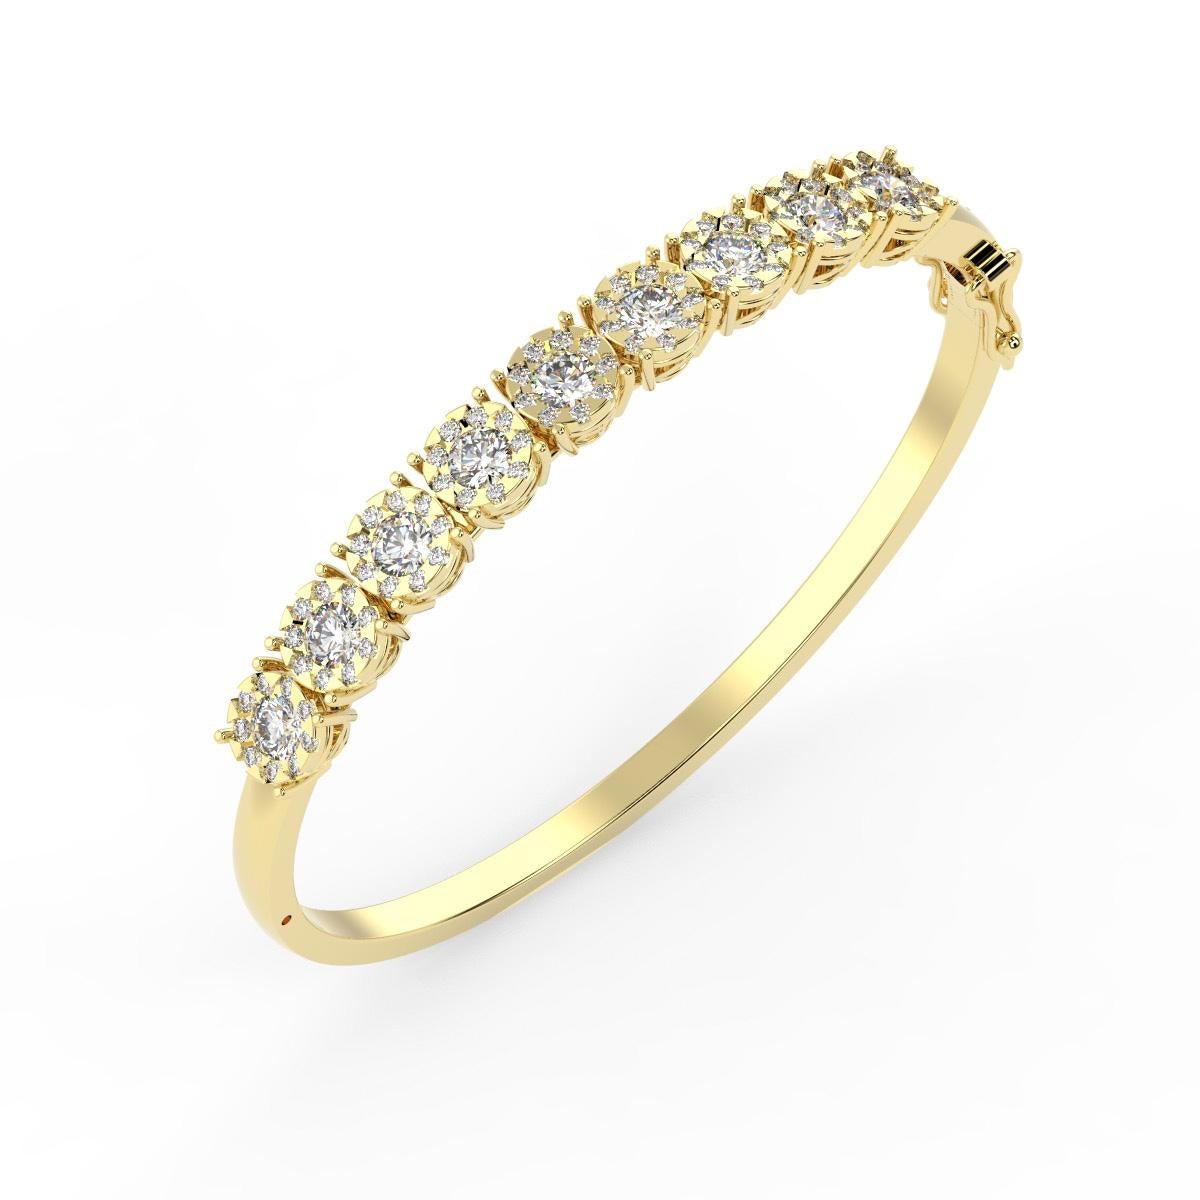 Ce bracelet en diamant présente de petits diamants ronds micro-prongés en or rose 14k pour un poids total en carats de 5,00 carats. Les diamants sont sertis le long de la moitié supérieure de ce bracelet à charnière.

Détails du produit : 

Type de